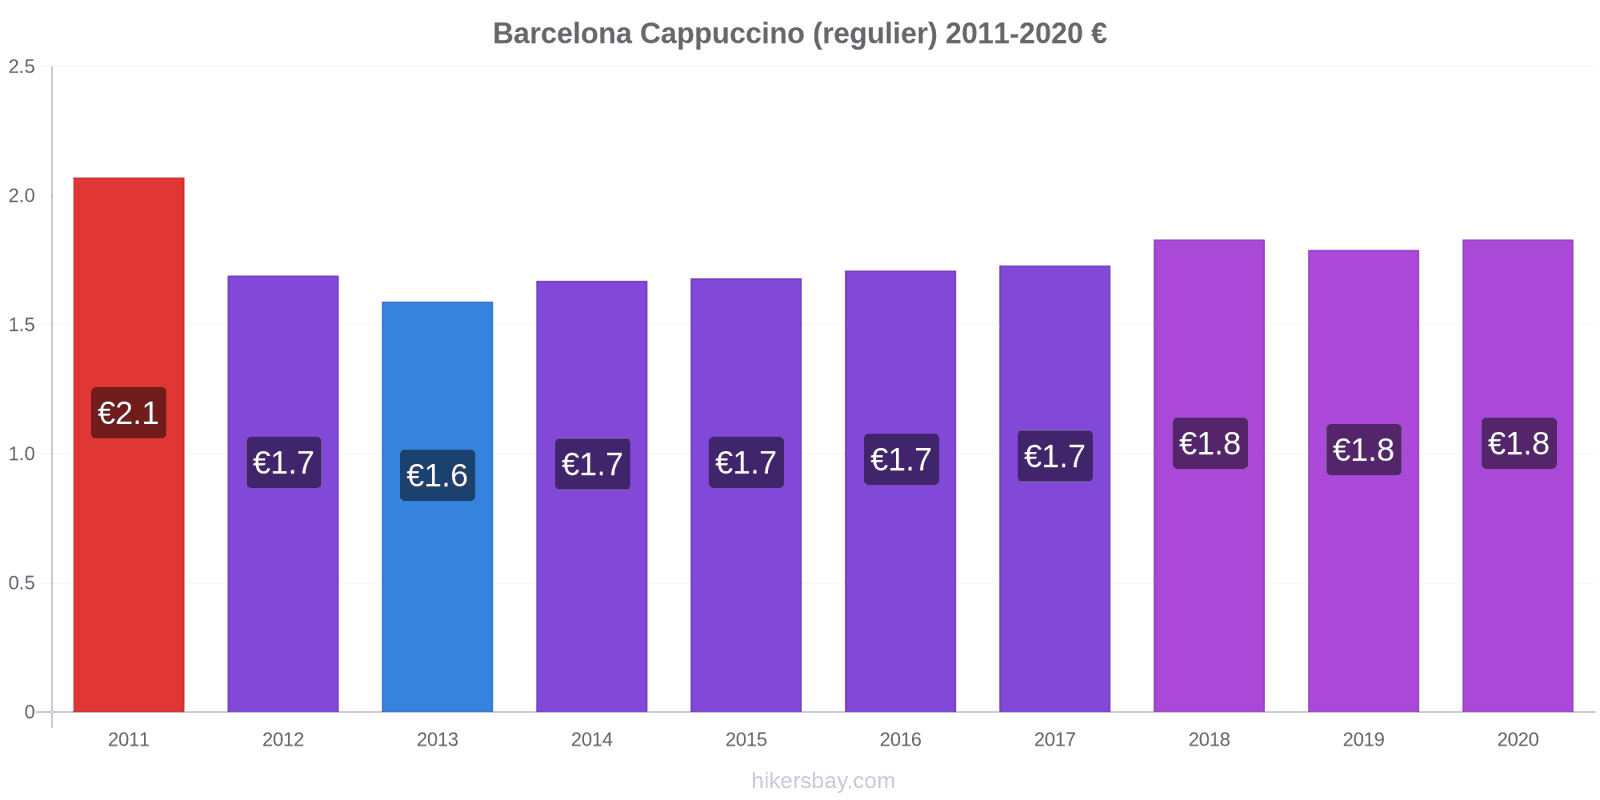 Barcelona prijswijzigingen Cappuccino (regelmatige) hikersbay.com